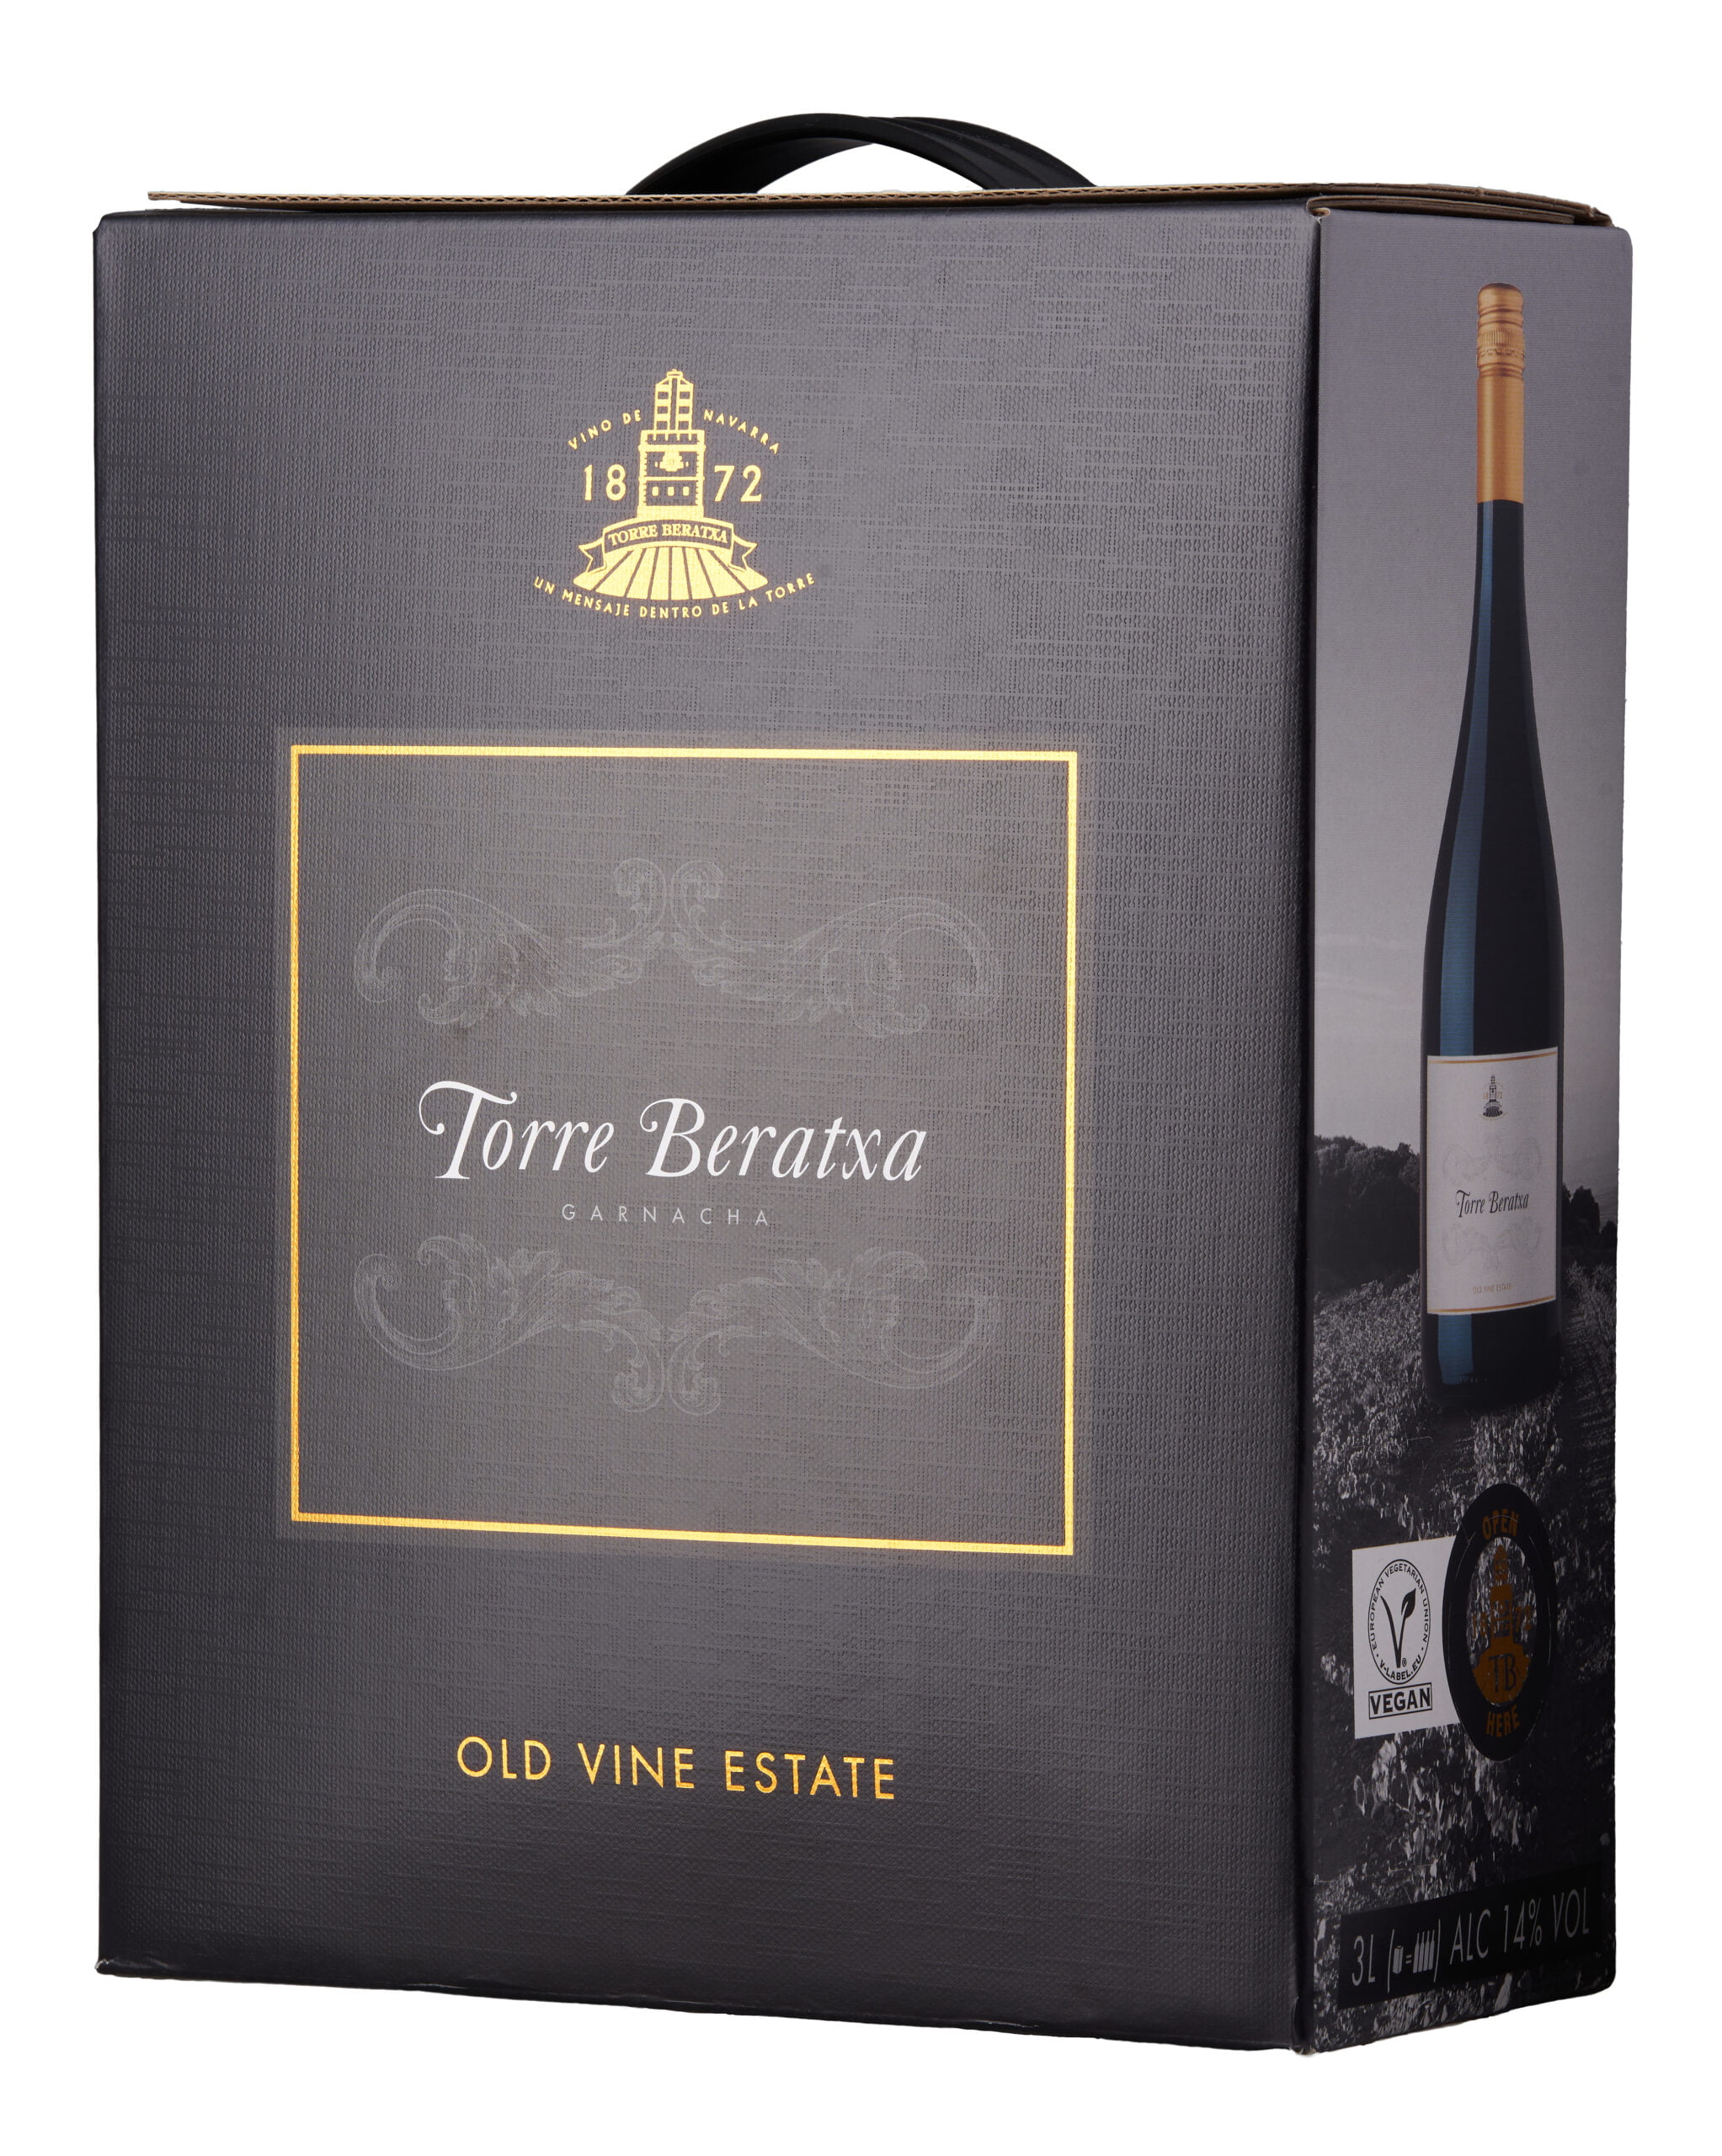 Torre Beratxa Old Vine Estate Group Garnacha - Pax BIB Beverage